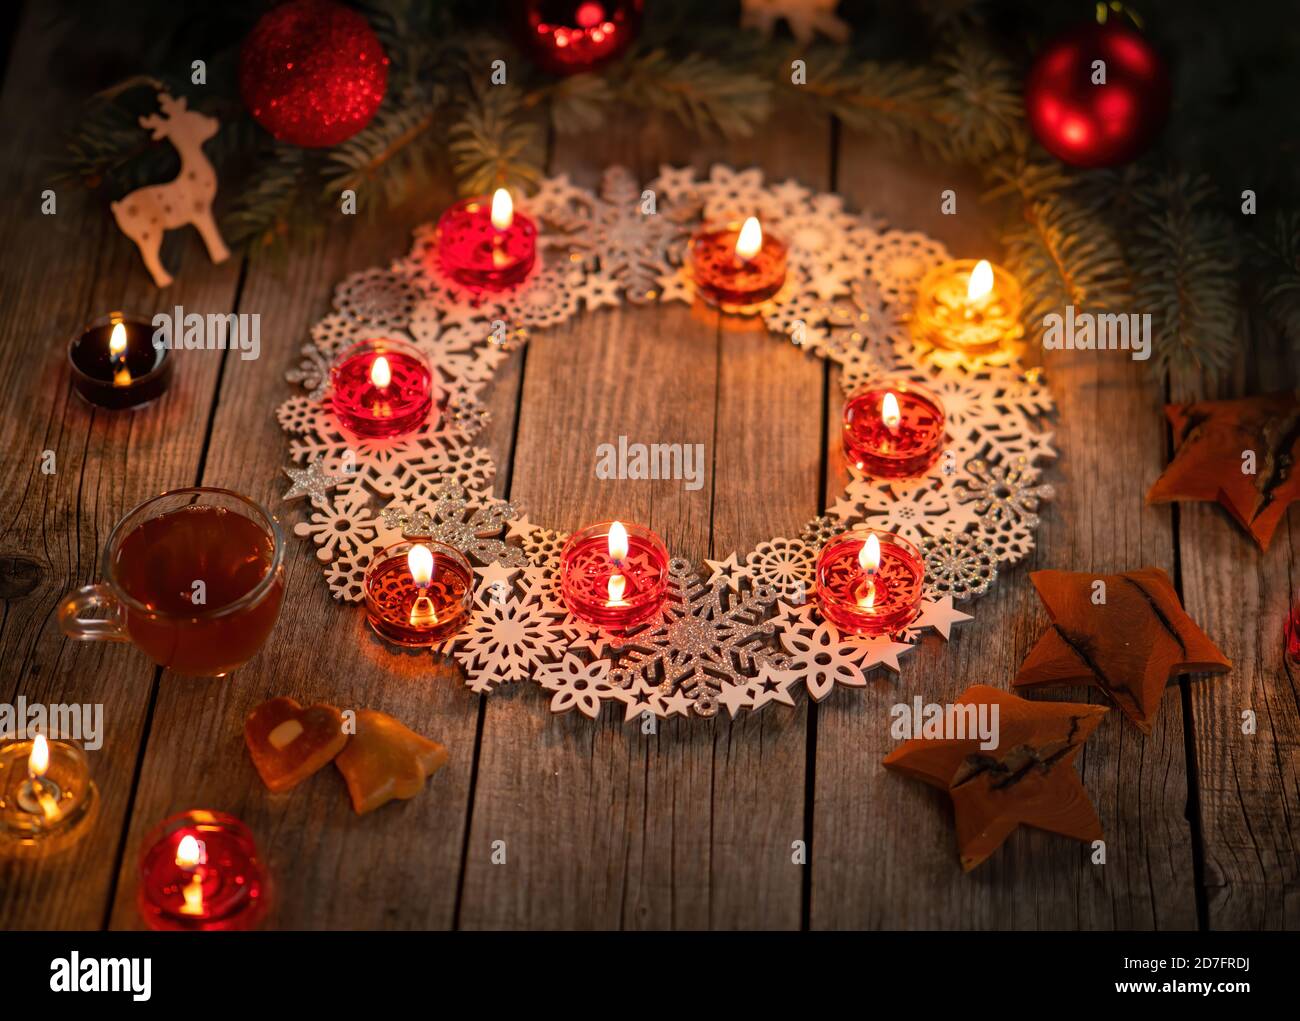 Décoration ornementale d'hiver avec bougies allumées sur table rustique en bois avec punch de vin chaud et pain d'épice. Les fêtes de Noël et le thème du nouvel an Banque D'Images